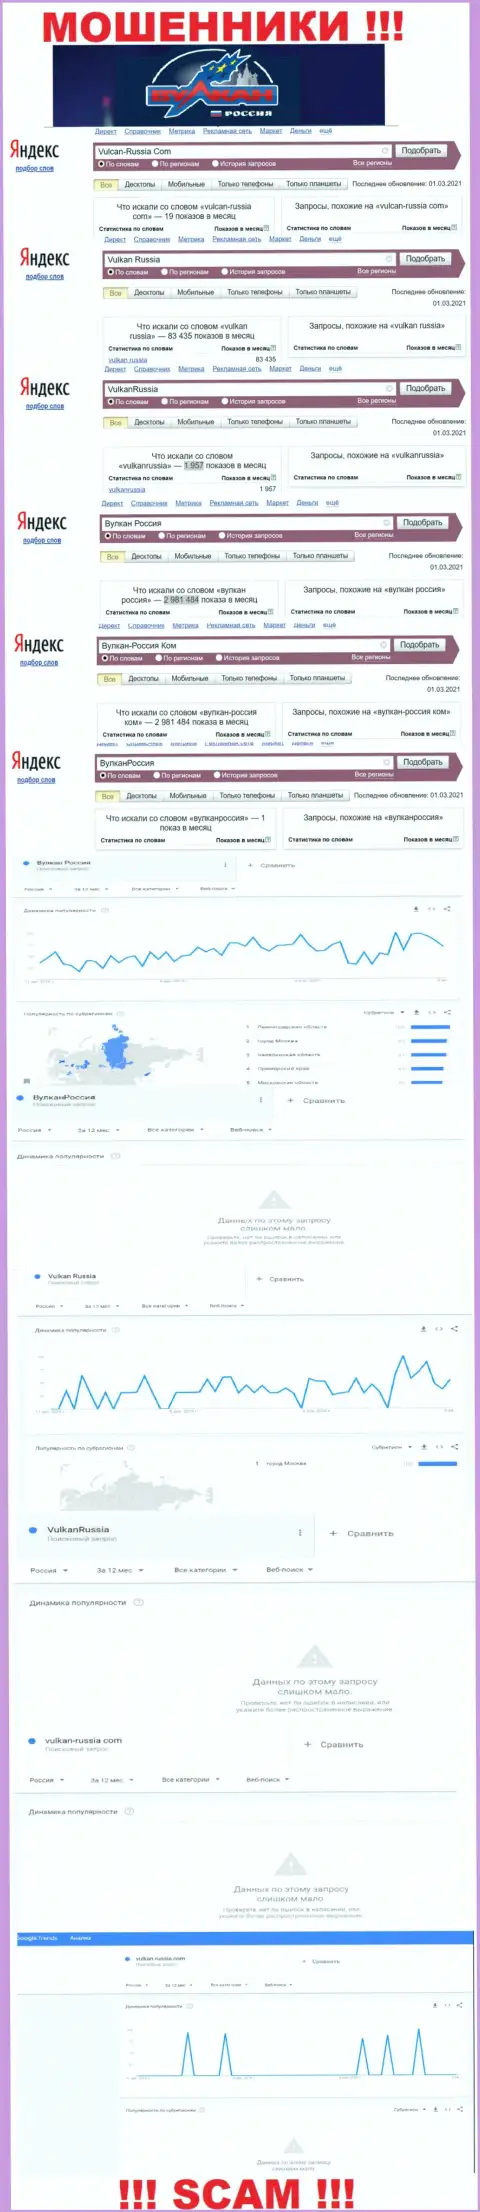 Статистические данные количества просмотров информации о шулерах Vulkan Russia в сети